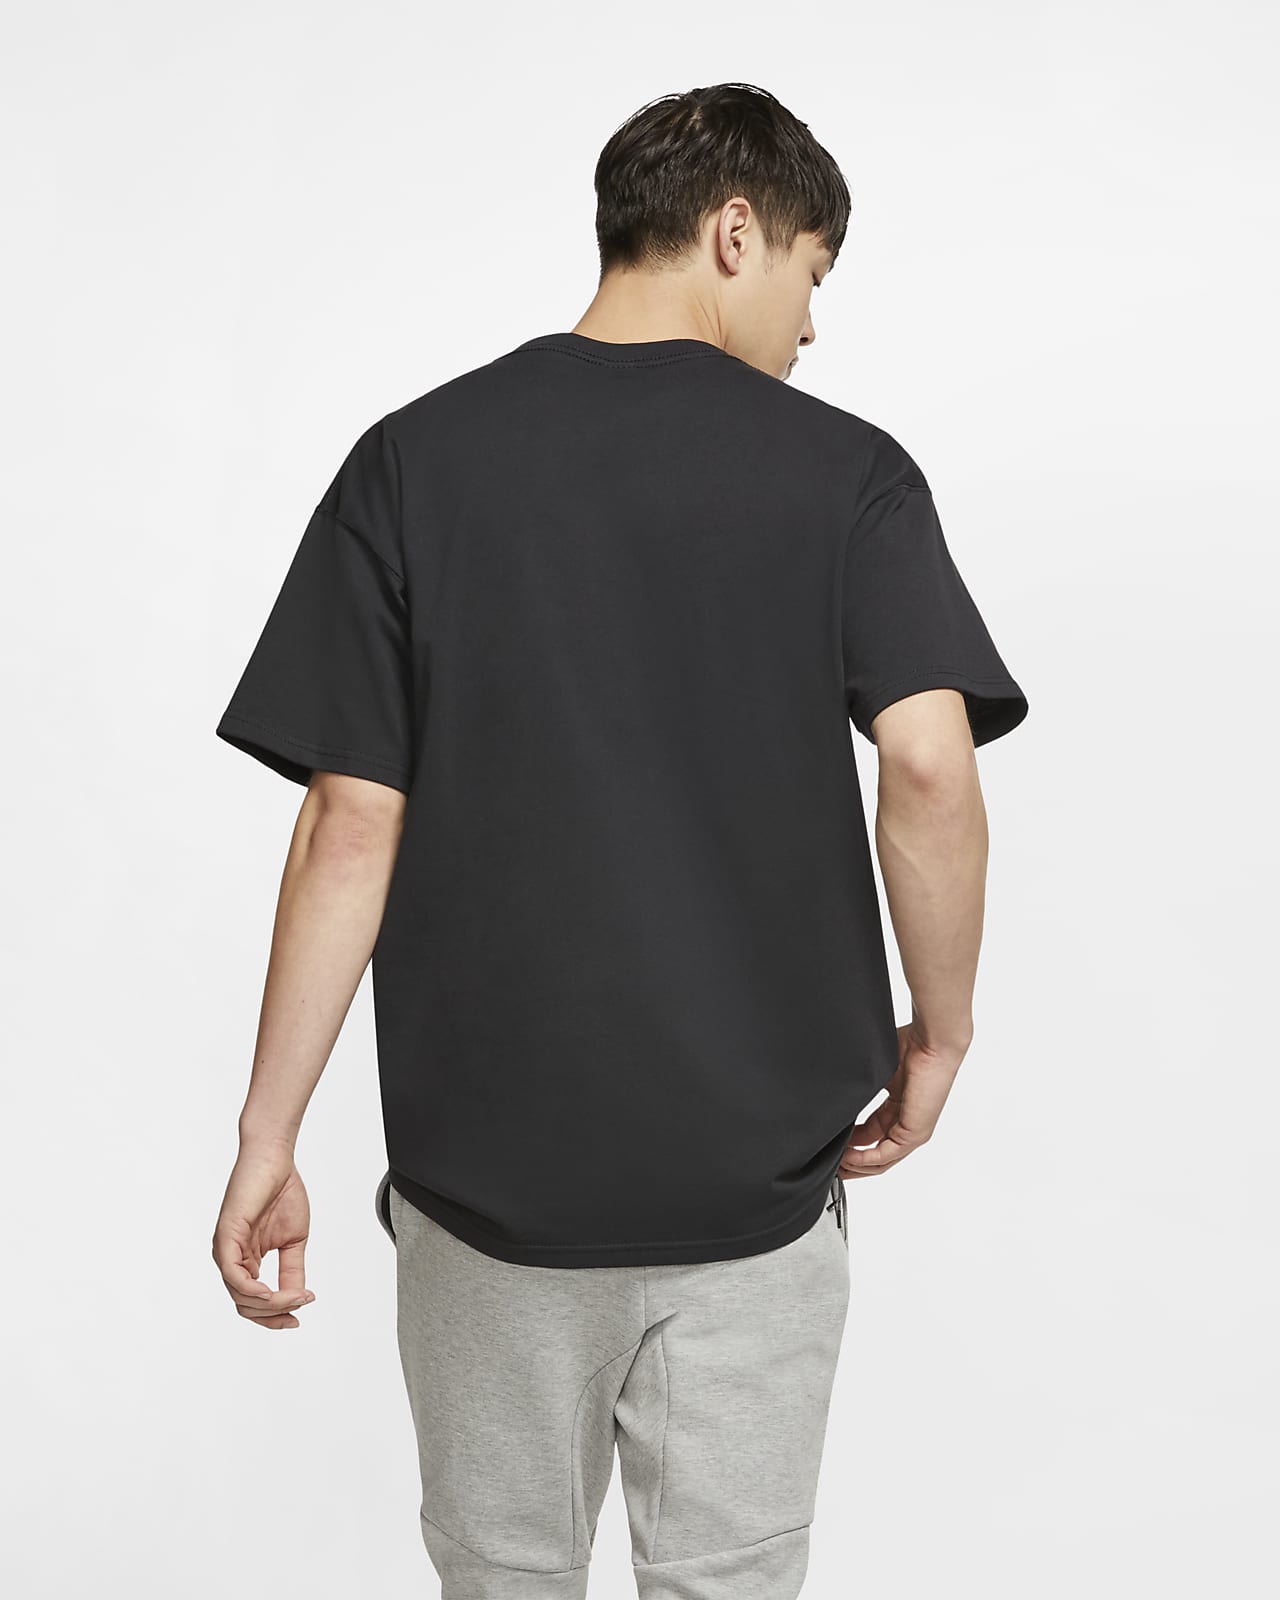 Bevoorrecht Samengroeiing straal Nike Men's Short-Sleeve T-Shirt. Nike JP